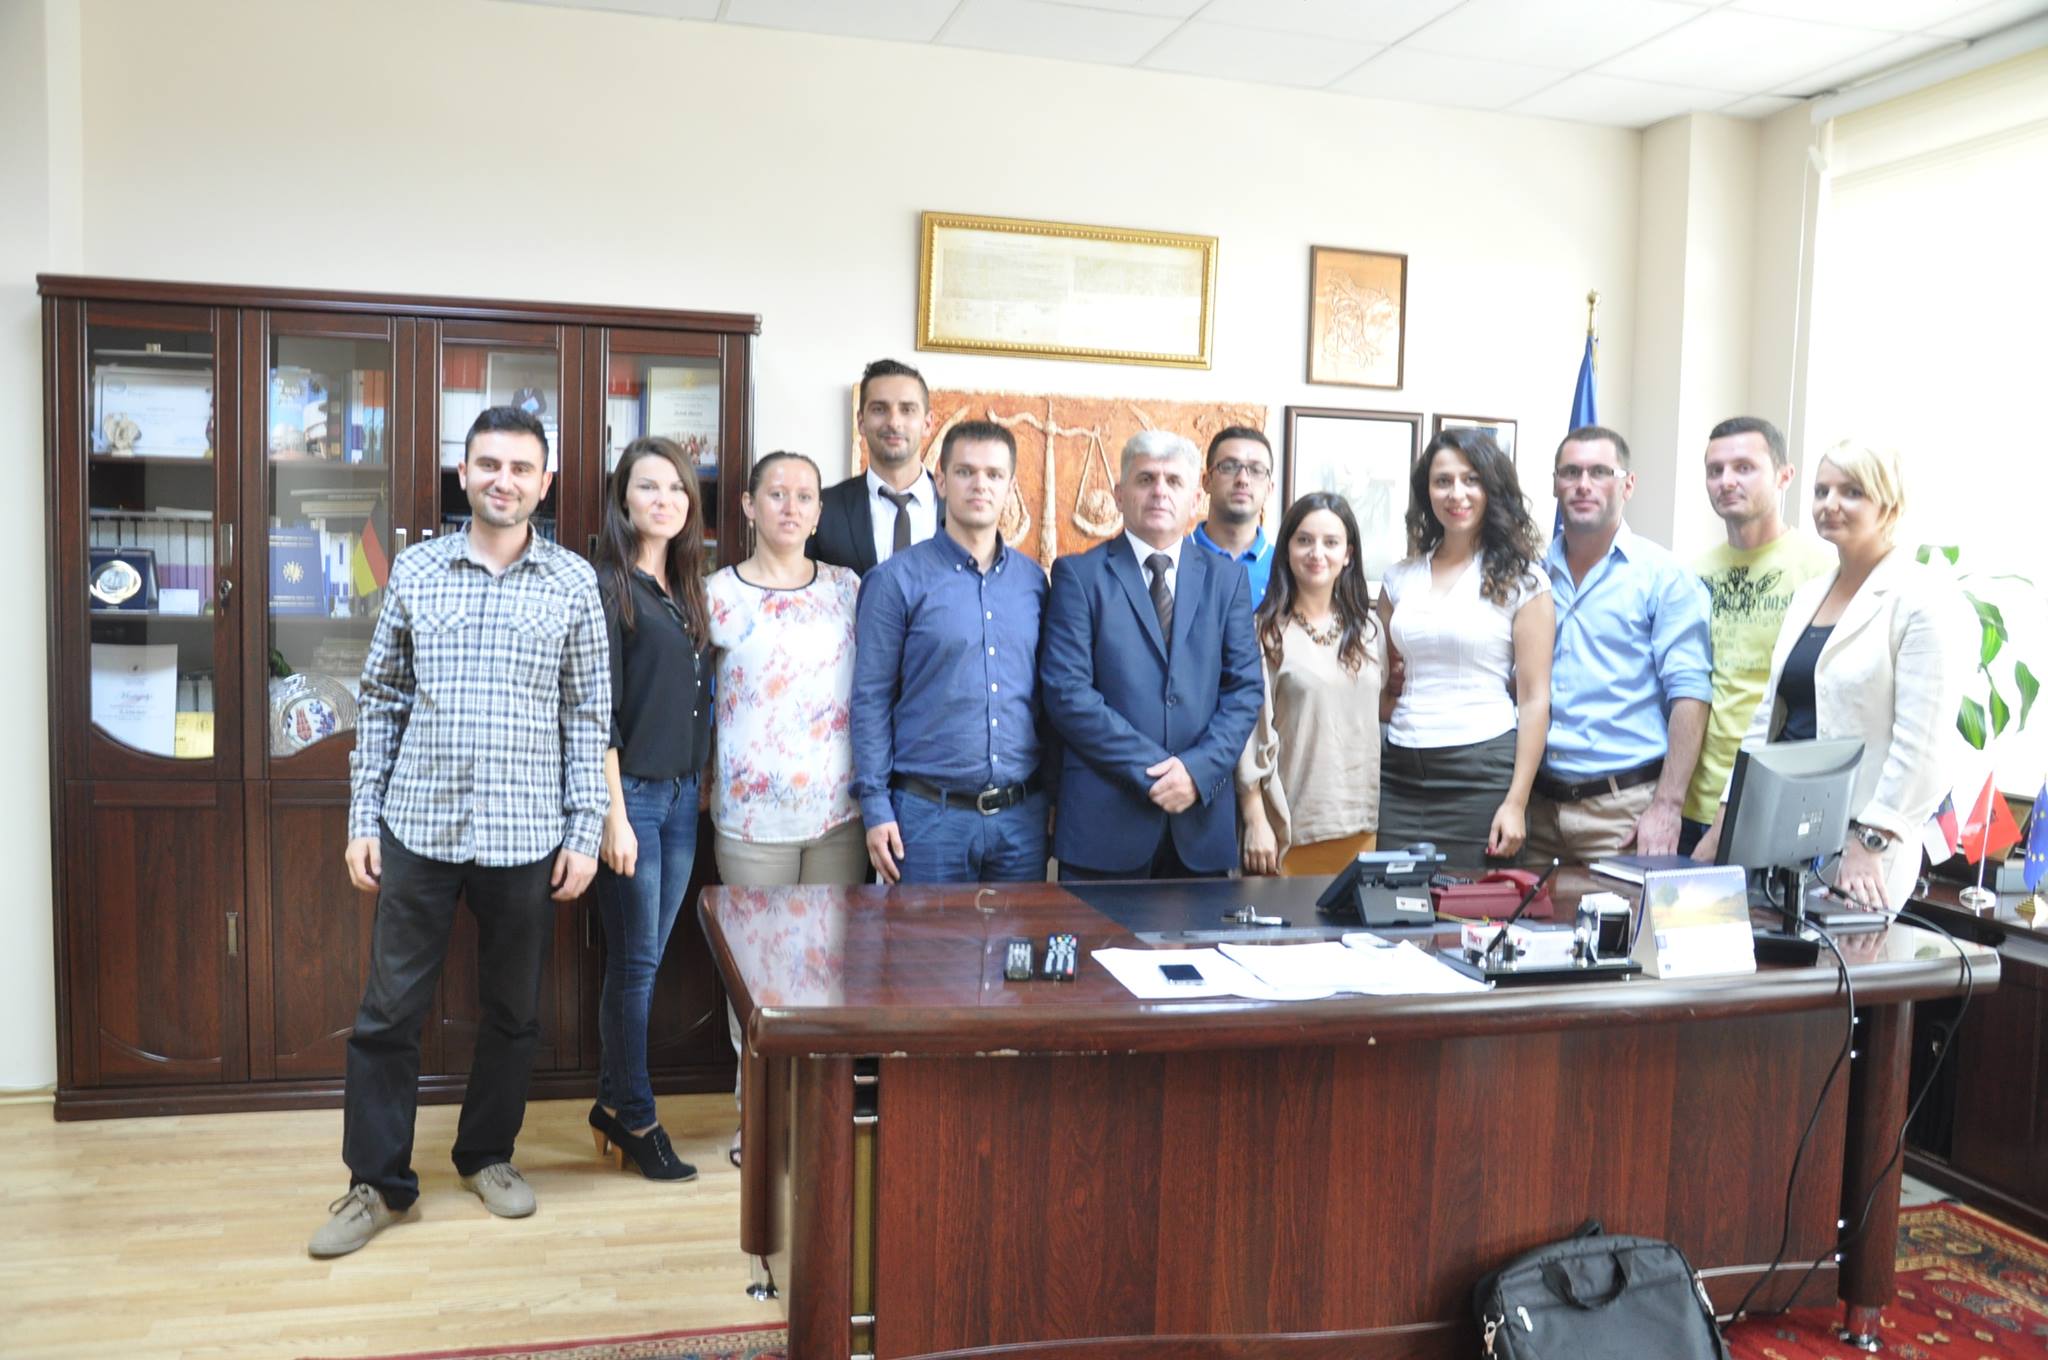 Dhjetë praktikantë përfundojnë praktikën në Gjykatën Themelore të Gjilanit